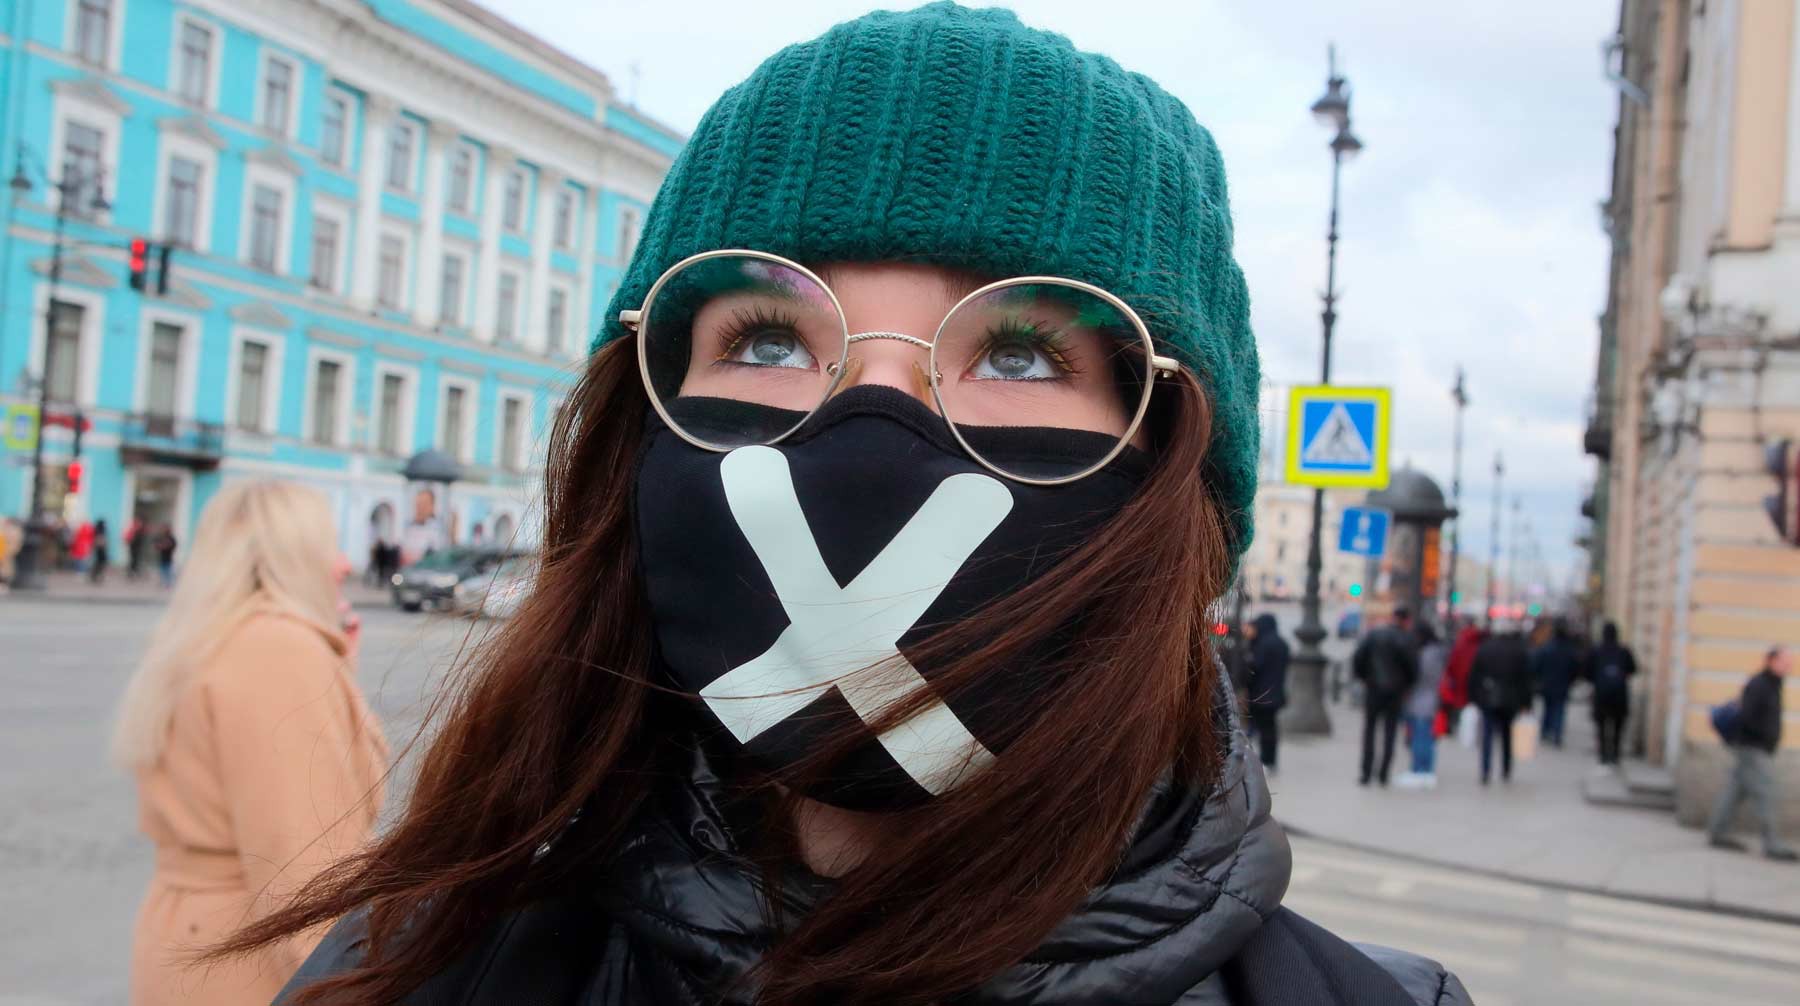 Dailystorm - Заболевших критически много: Беглов пригрозил ввести в Петербурге жесткие меры